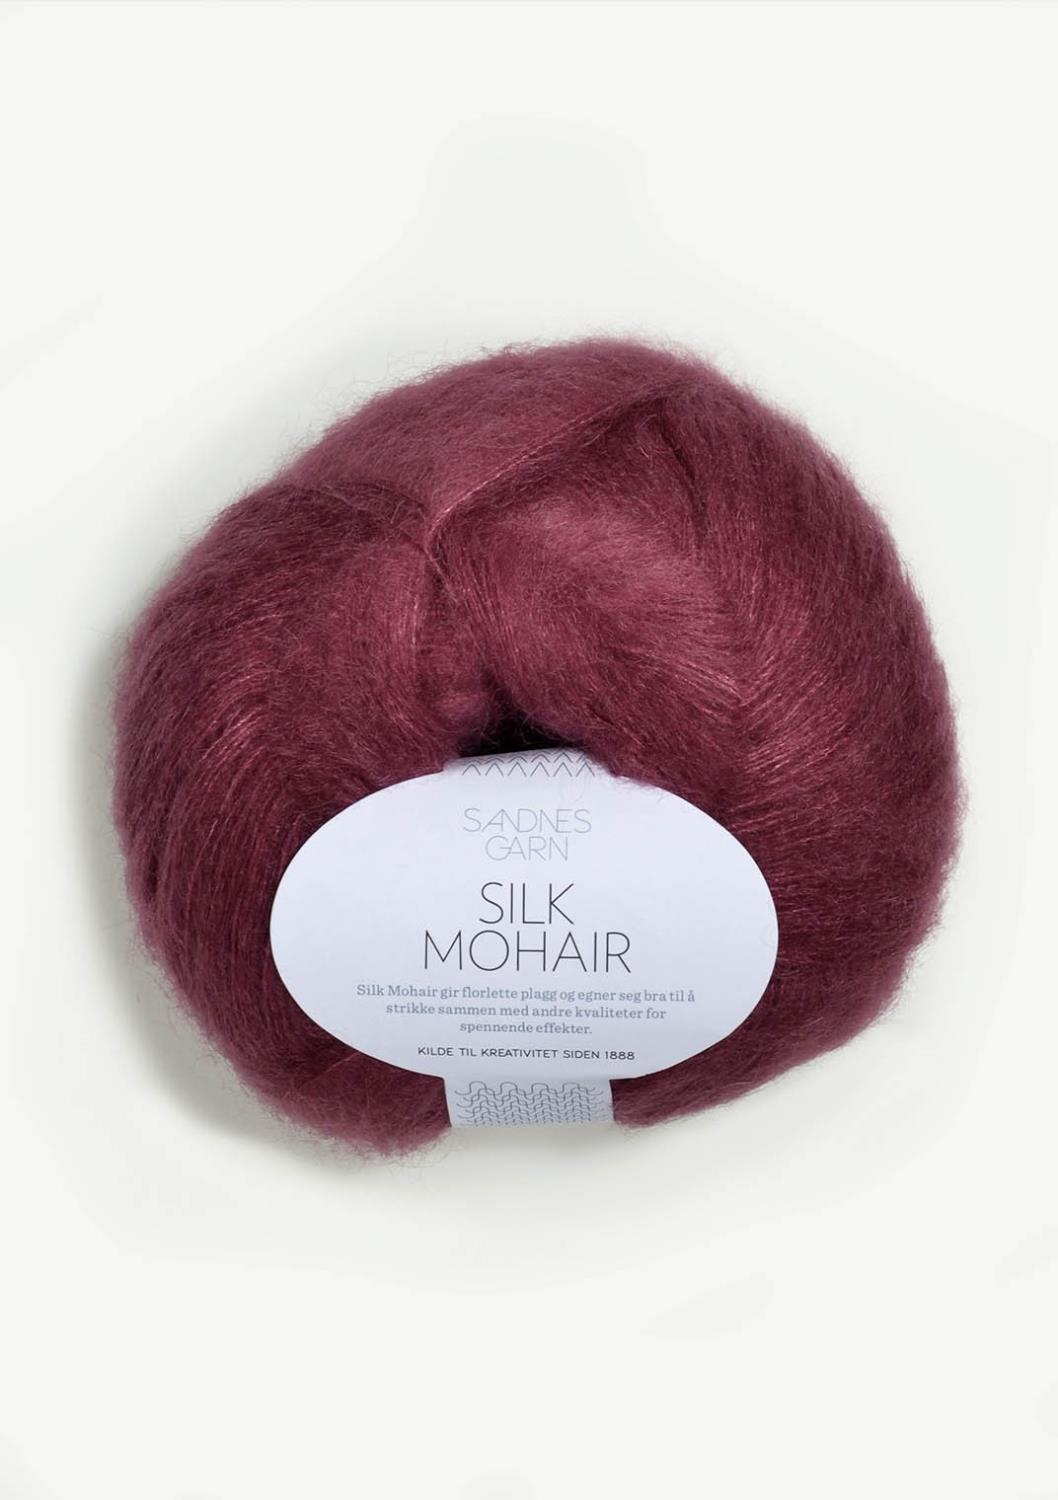 Silk Mohair Sandnes 4644 - Plomme